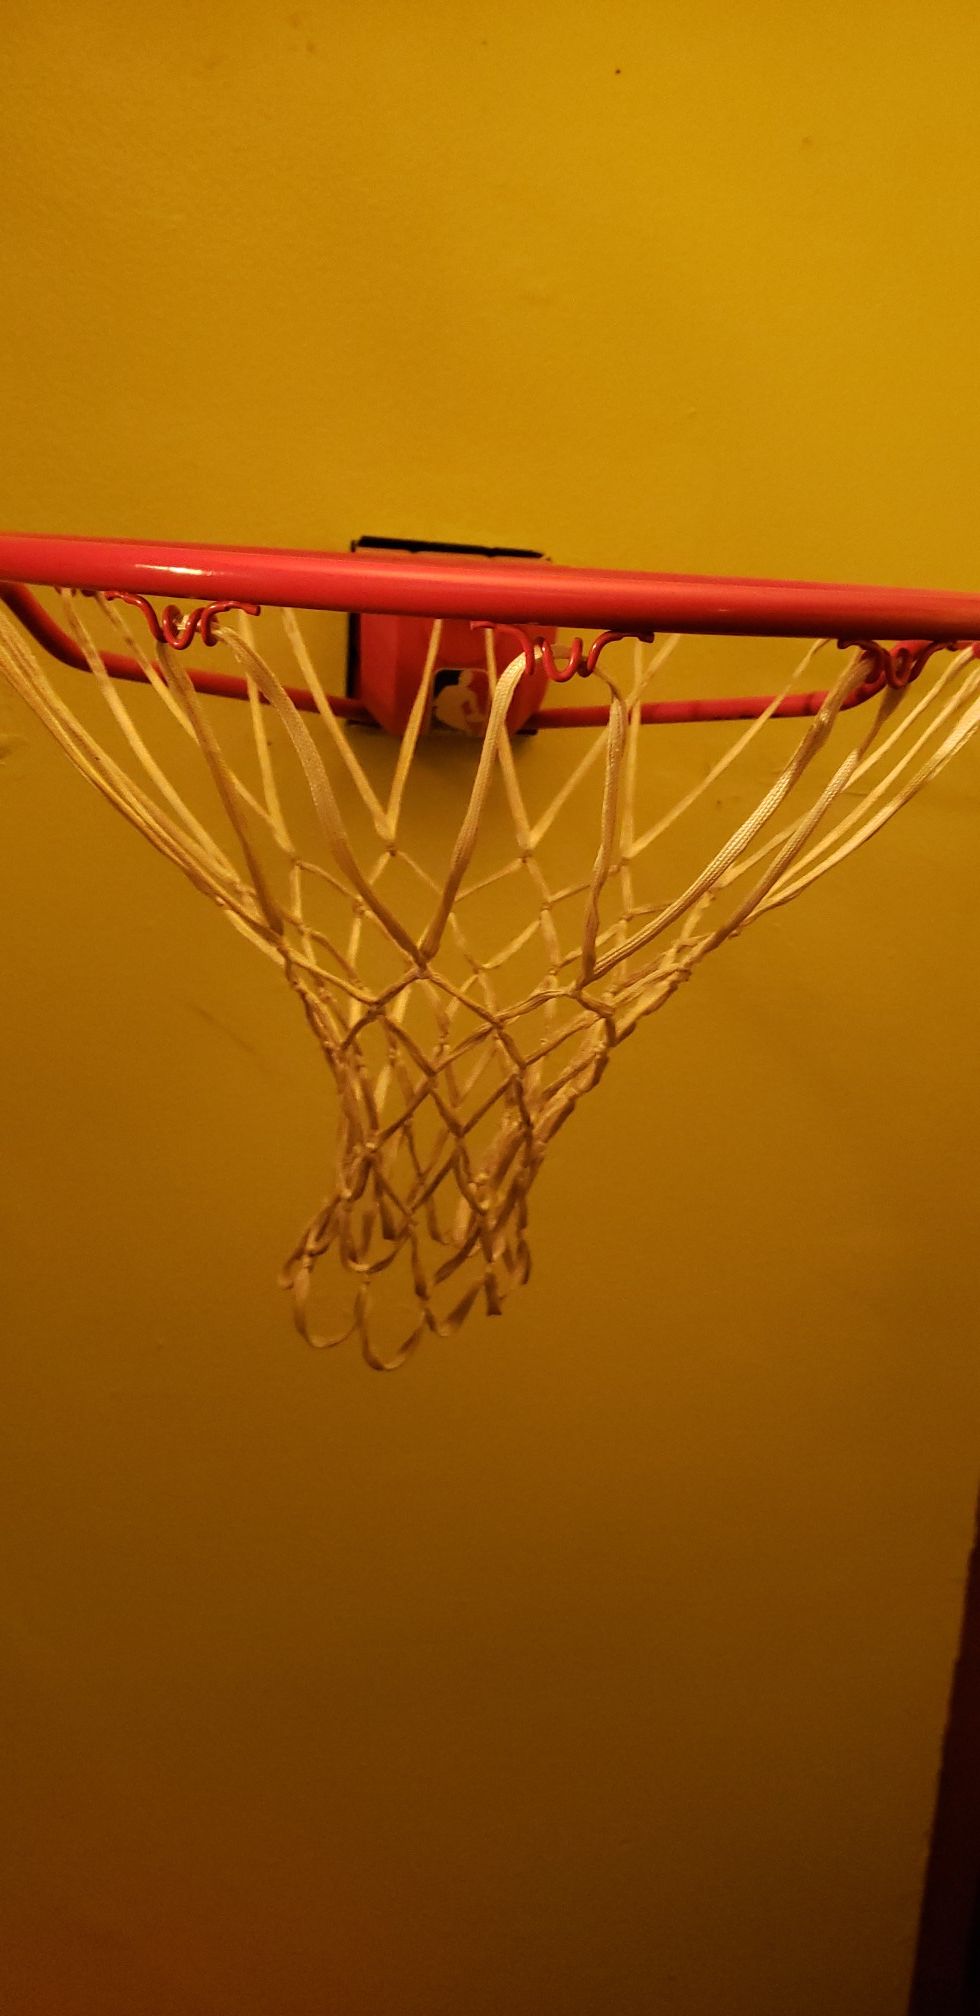 Nba size basketball hoop